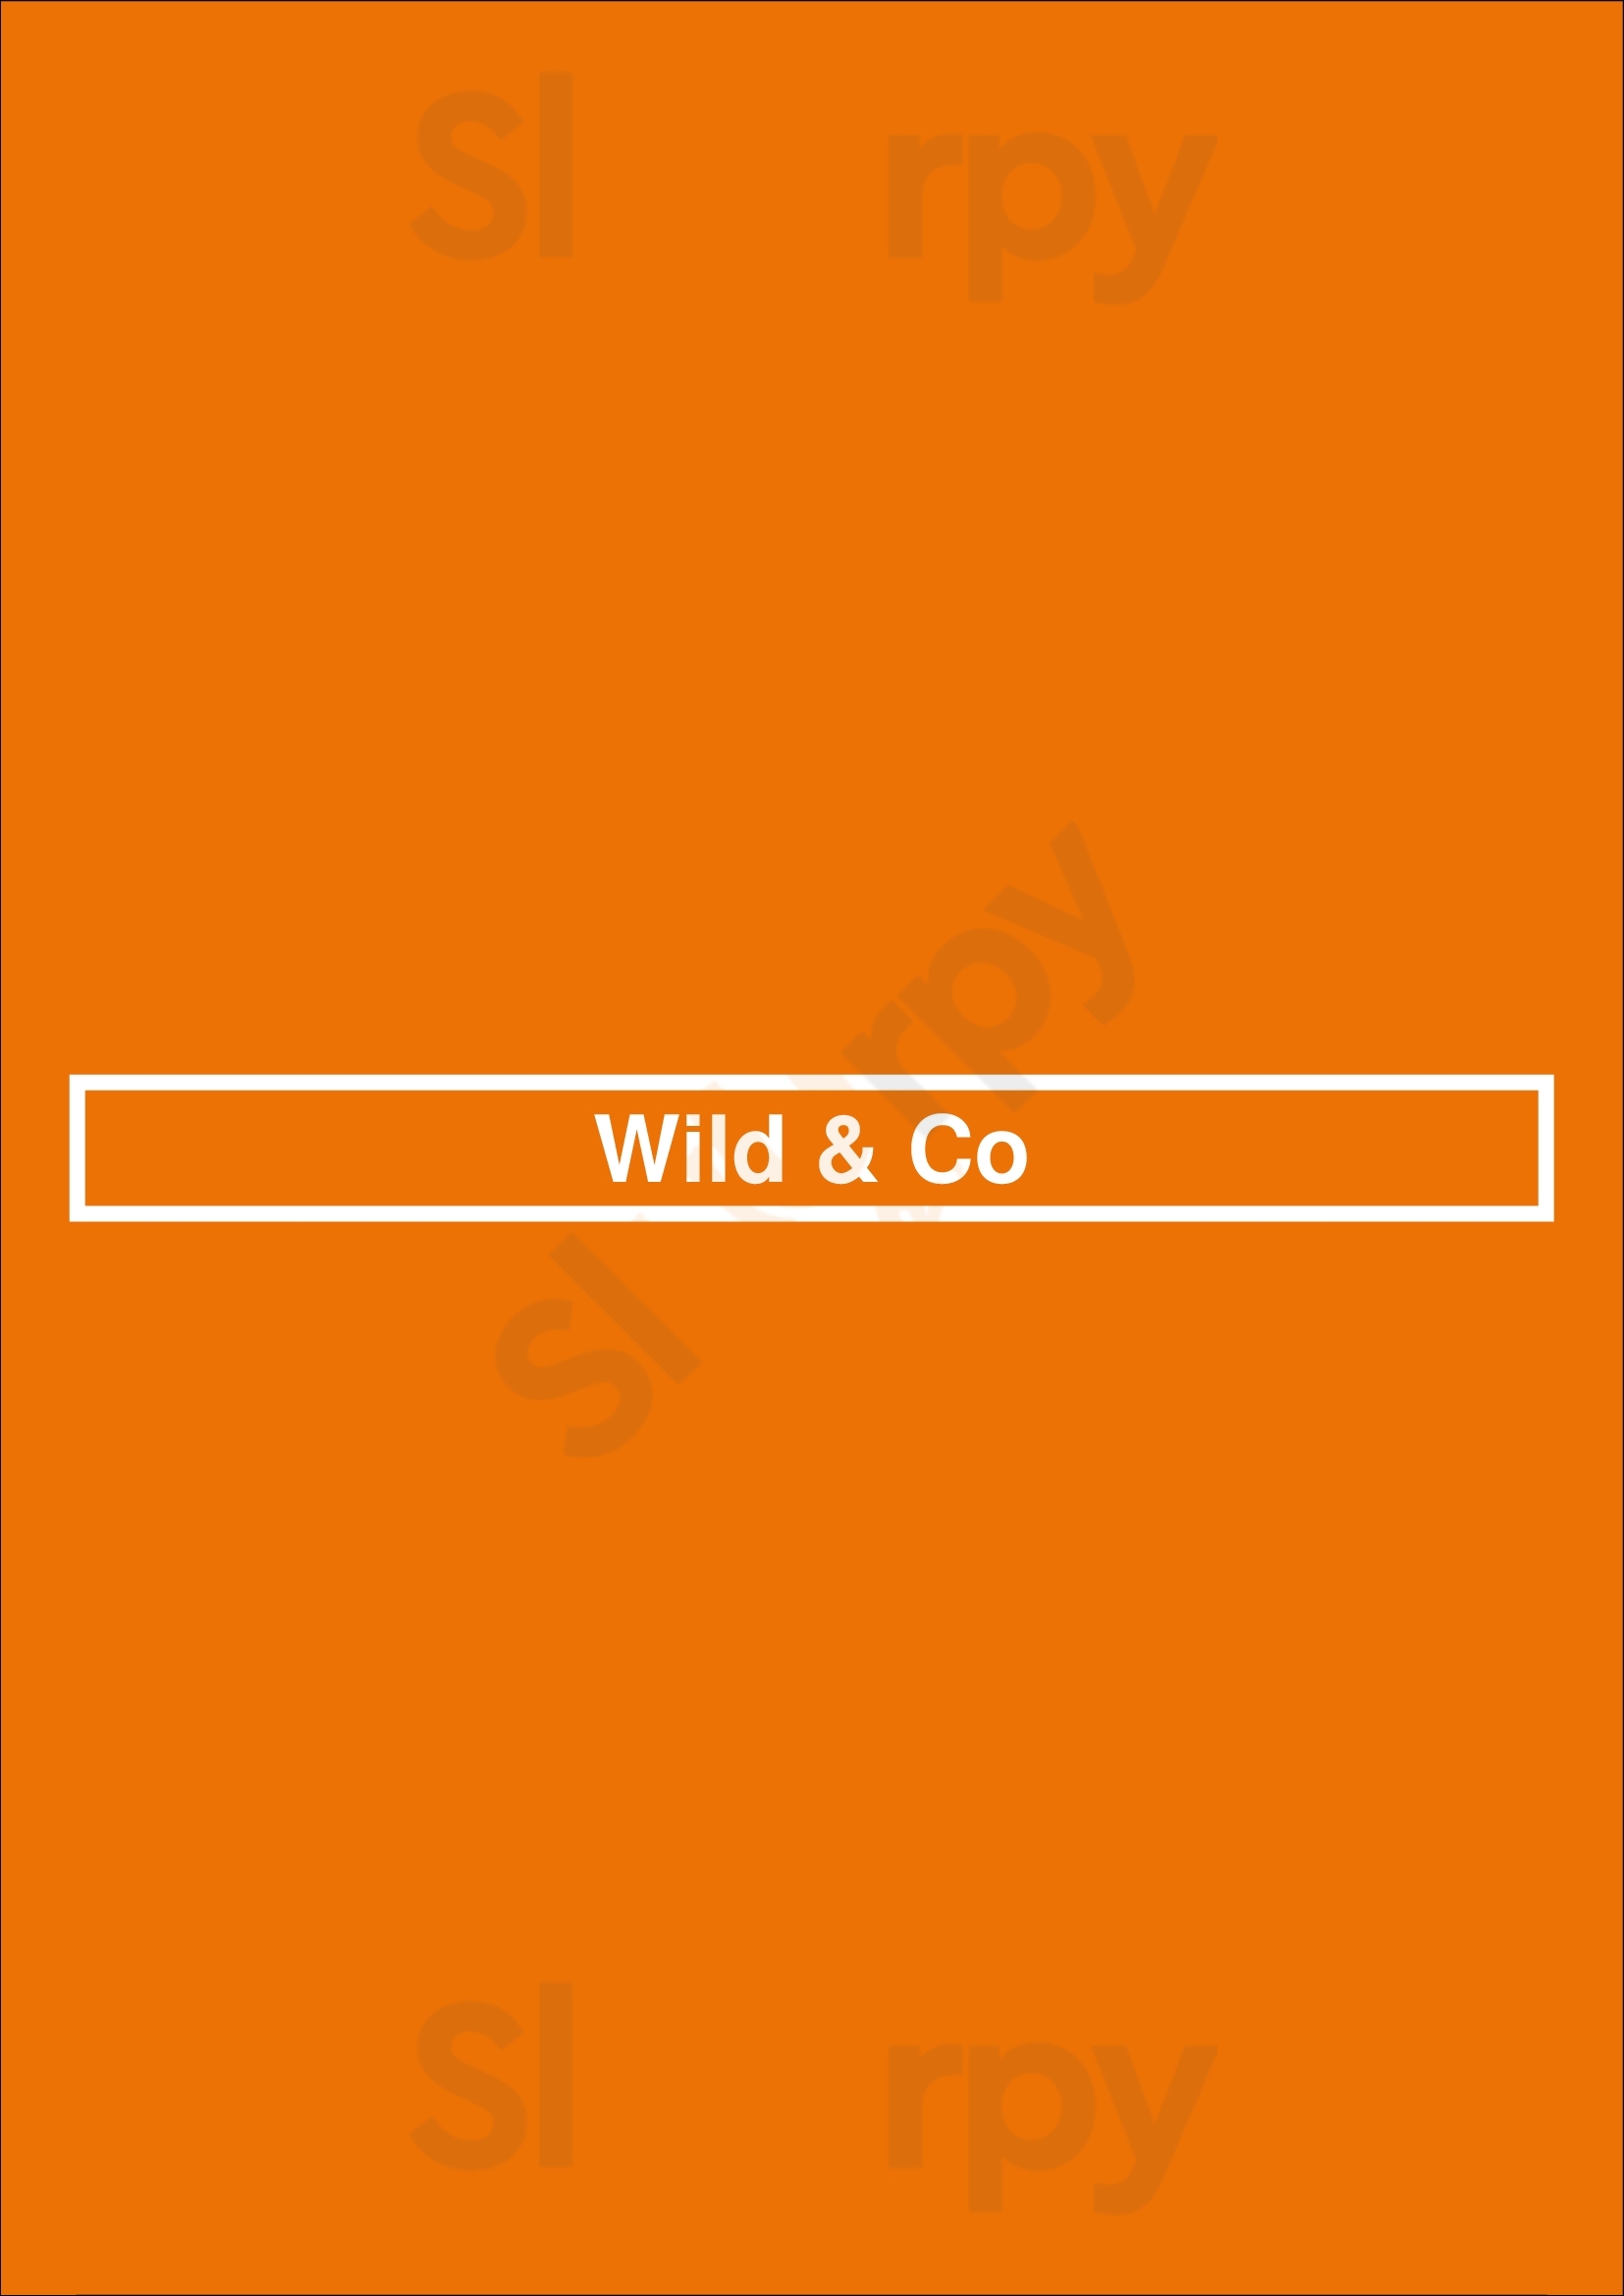 Wild & Co Albufeira Menu - 1